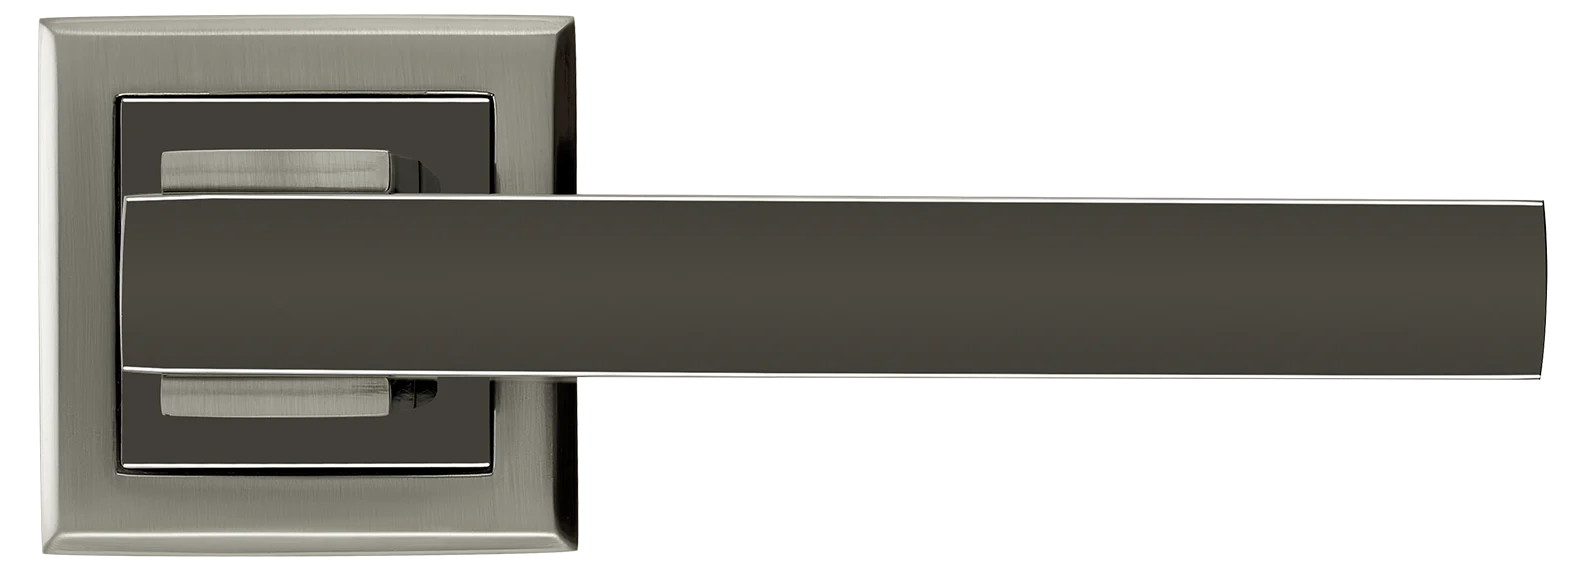 PIQUADRO, ручка дверная MH-37 SN/BN-S, на квадратной накладке, цвет - бел. никель/черн. никель фото купить в Краснодаре